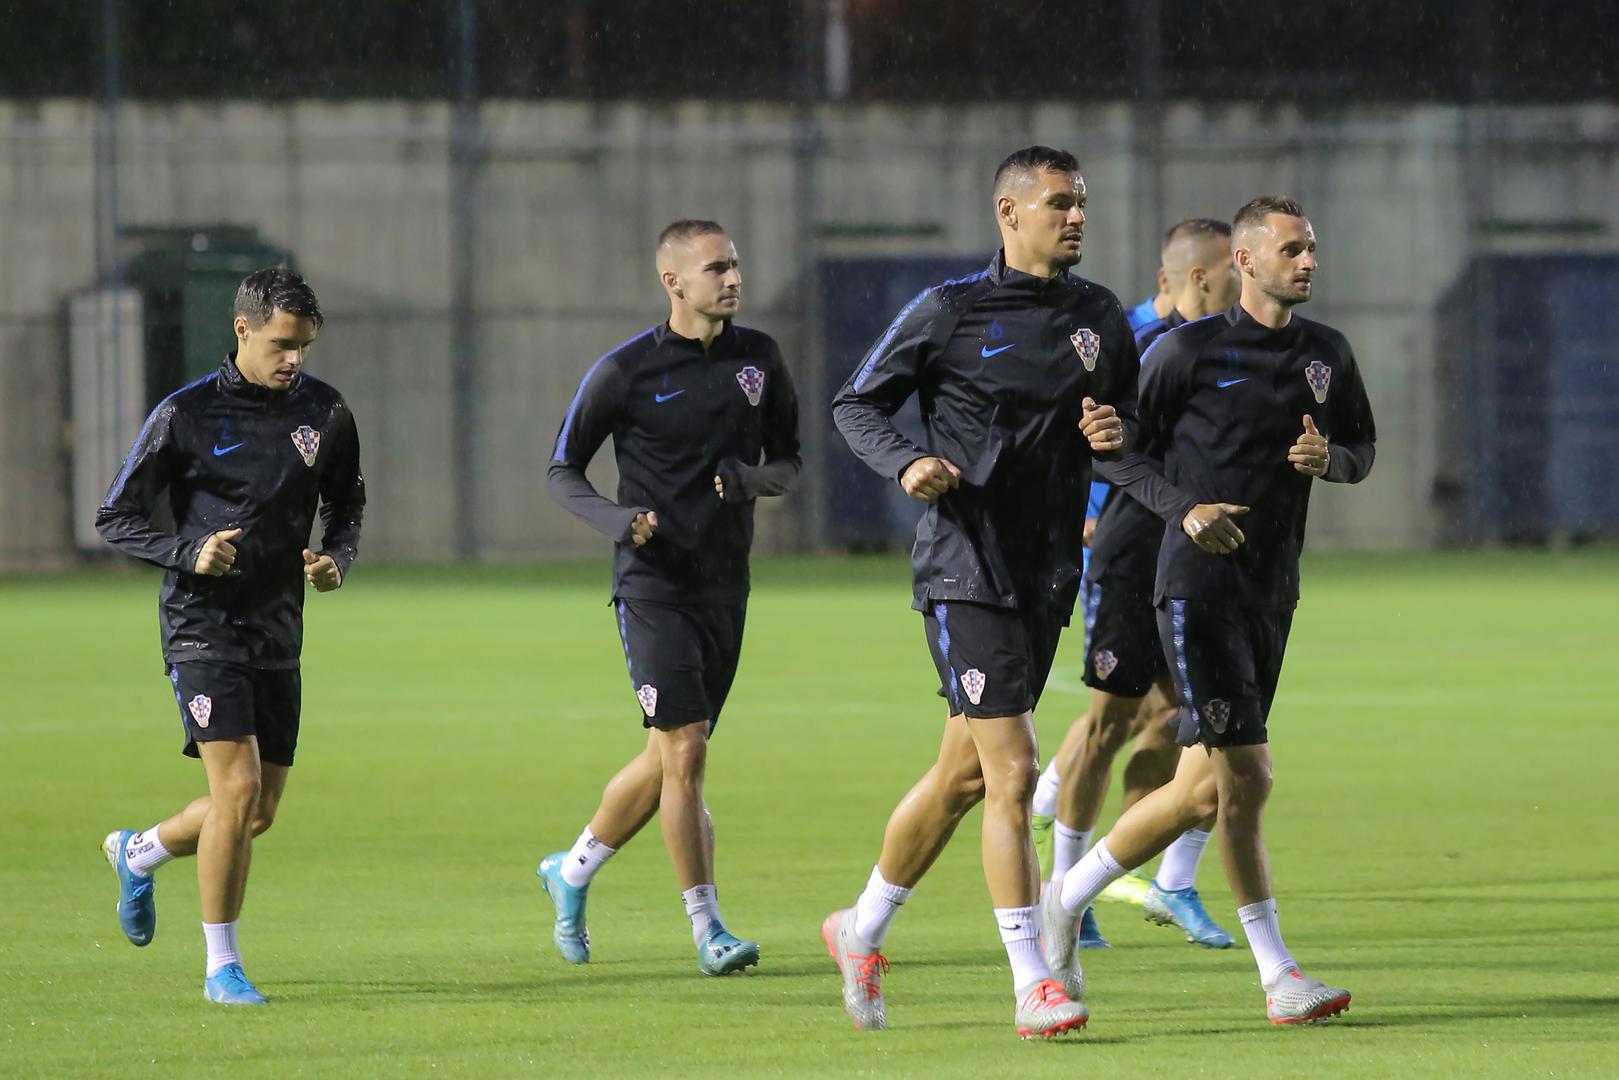 Hrvatska nogometna reprezentacija u ponedjeljak je u Zagrebu odradila prvi trening nakon okupljanja pred dvije gostujuće kvalifikacijske utakmice za odlazak na EURO protiv Slovačke u Trnavi 6. rujna i Azerbajdžana u Bakuu 9. rujna.